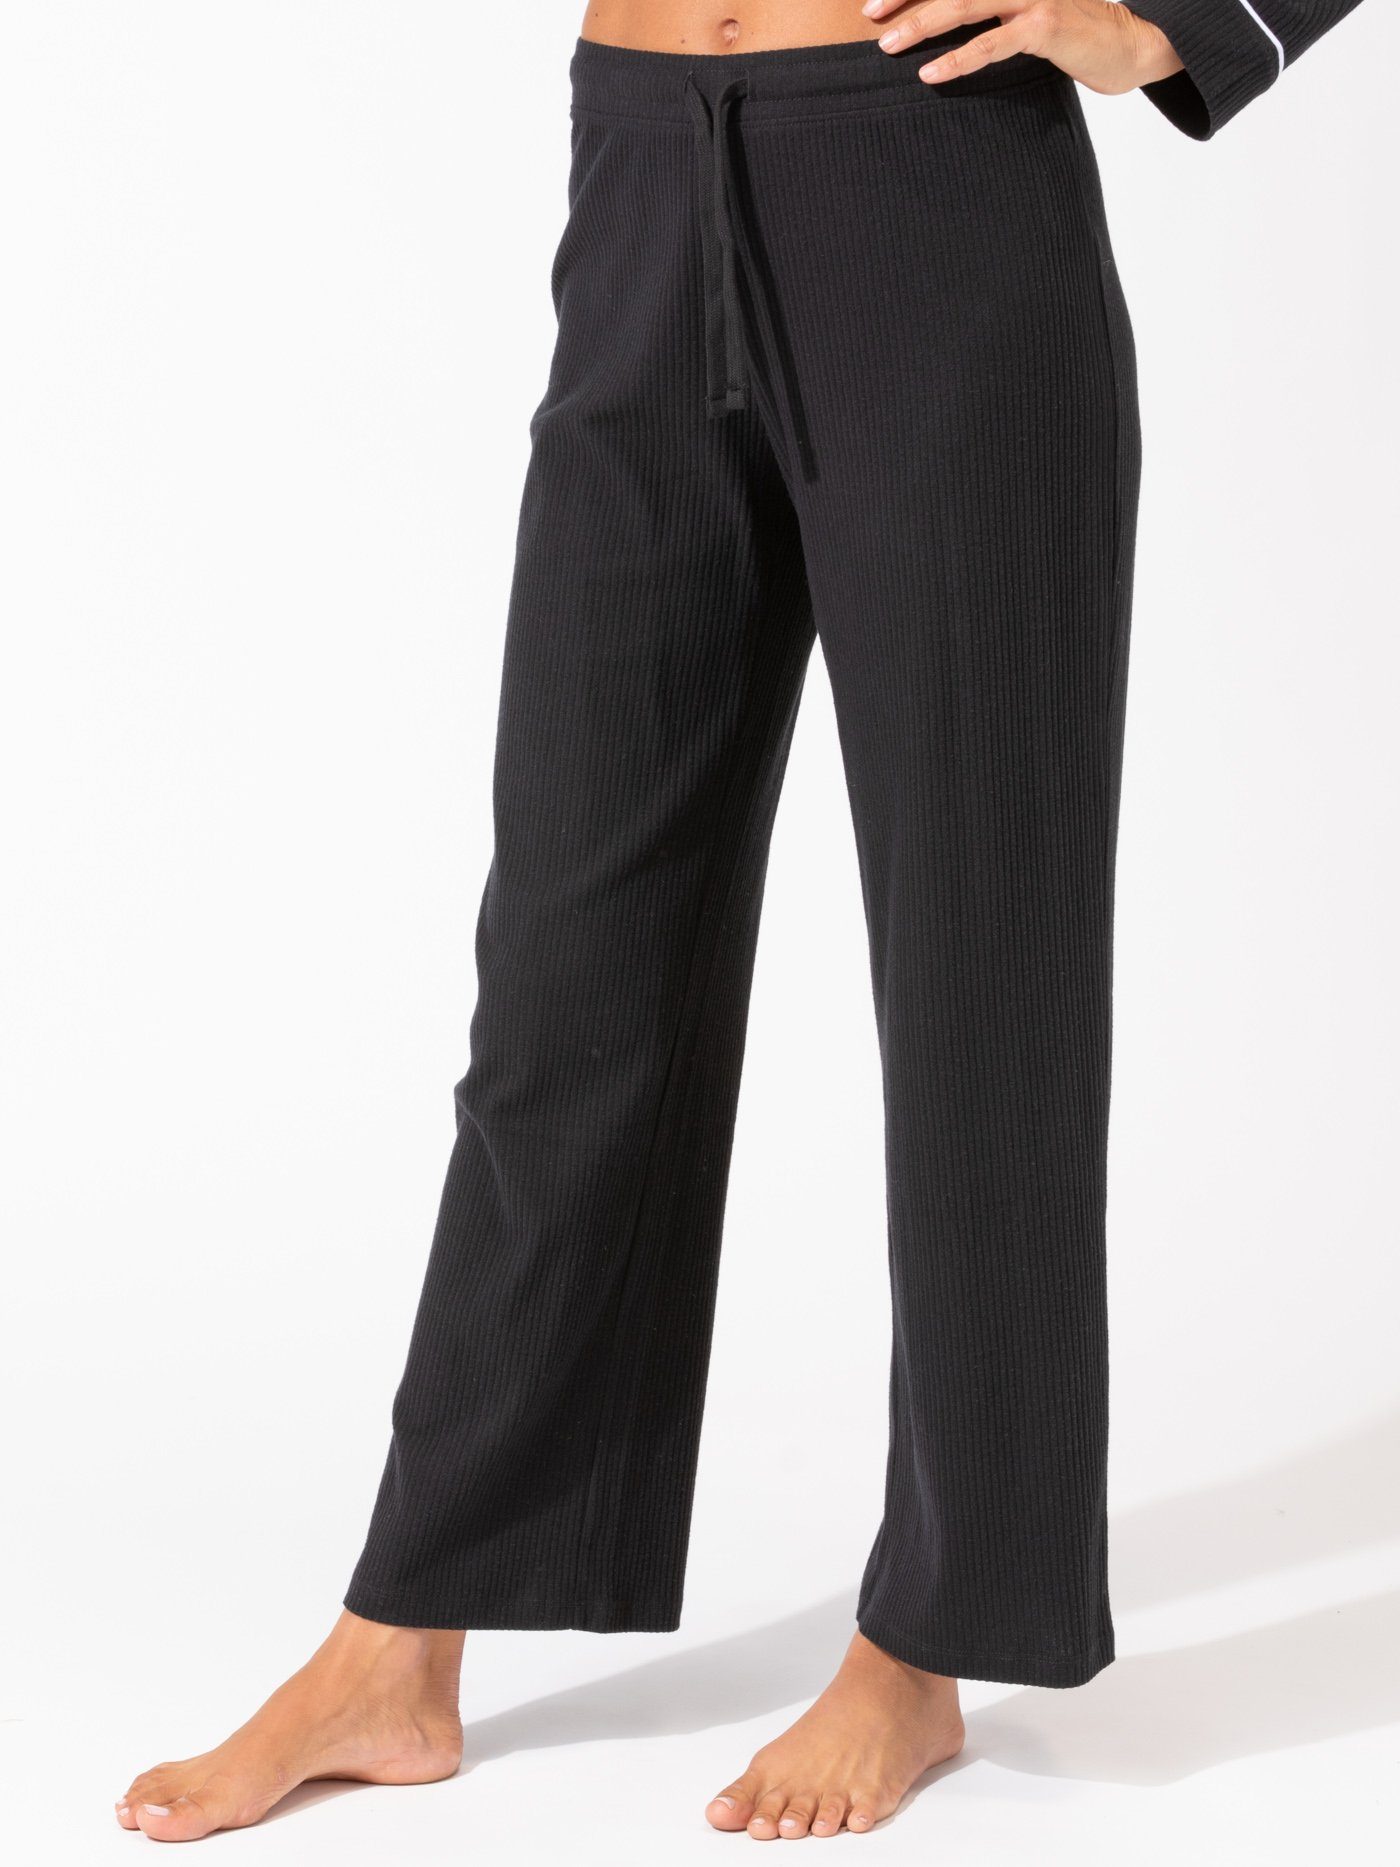 Unique Black Women's Pants-origami Trousers/ 4 Way Pants-women's